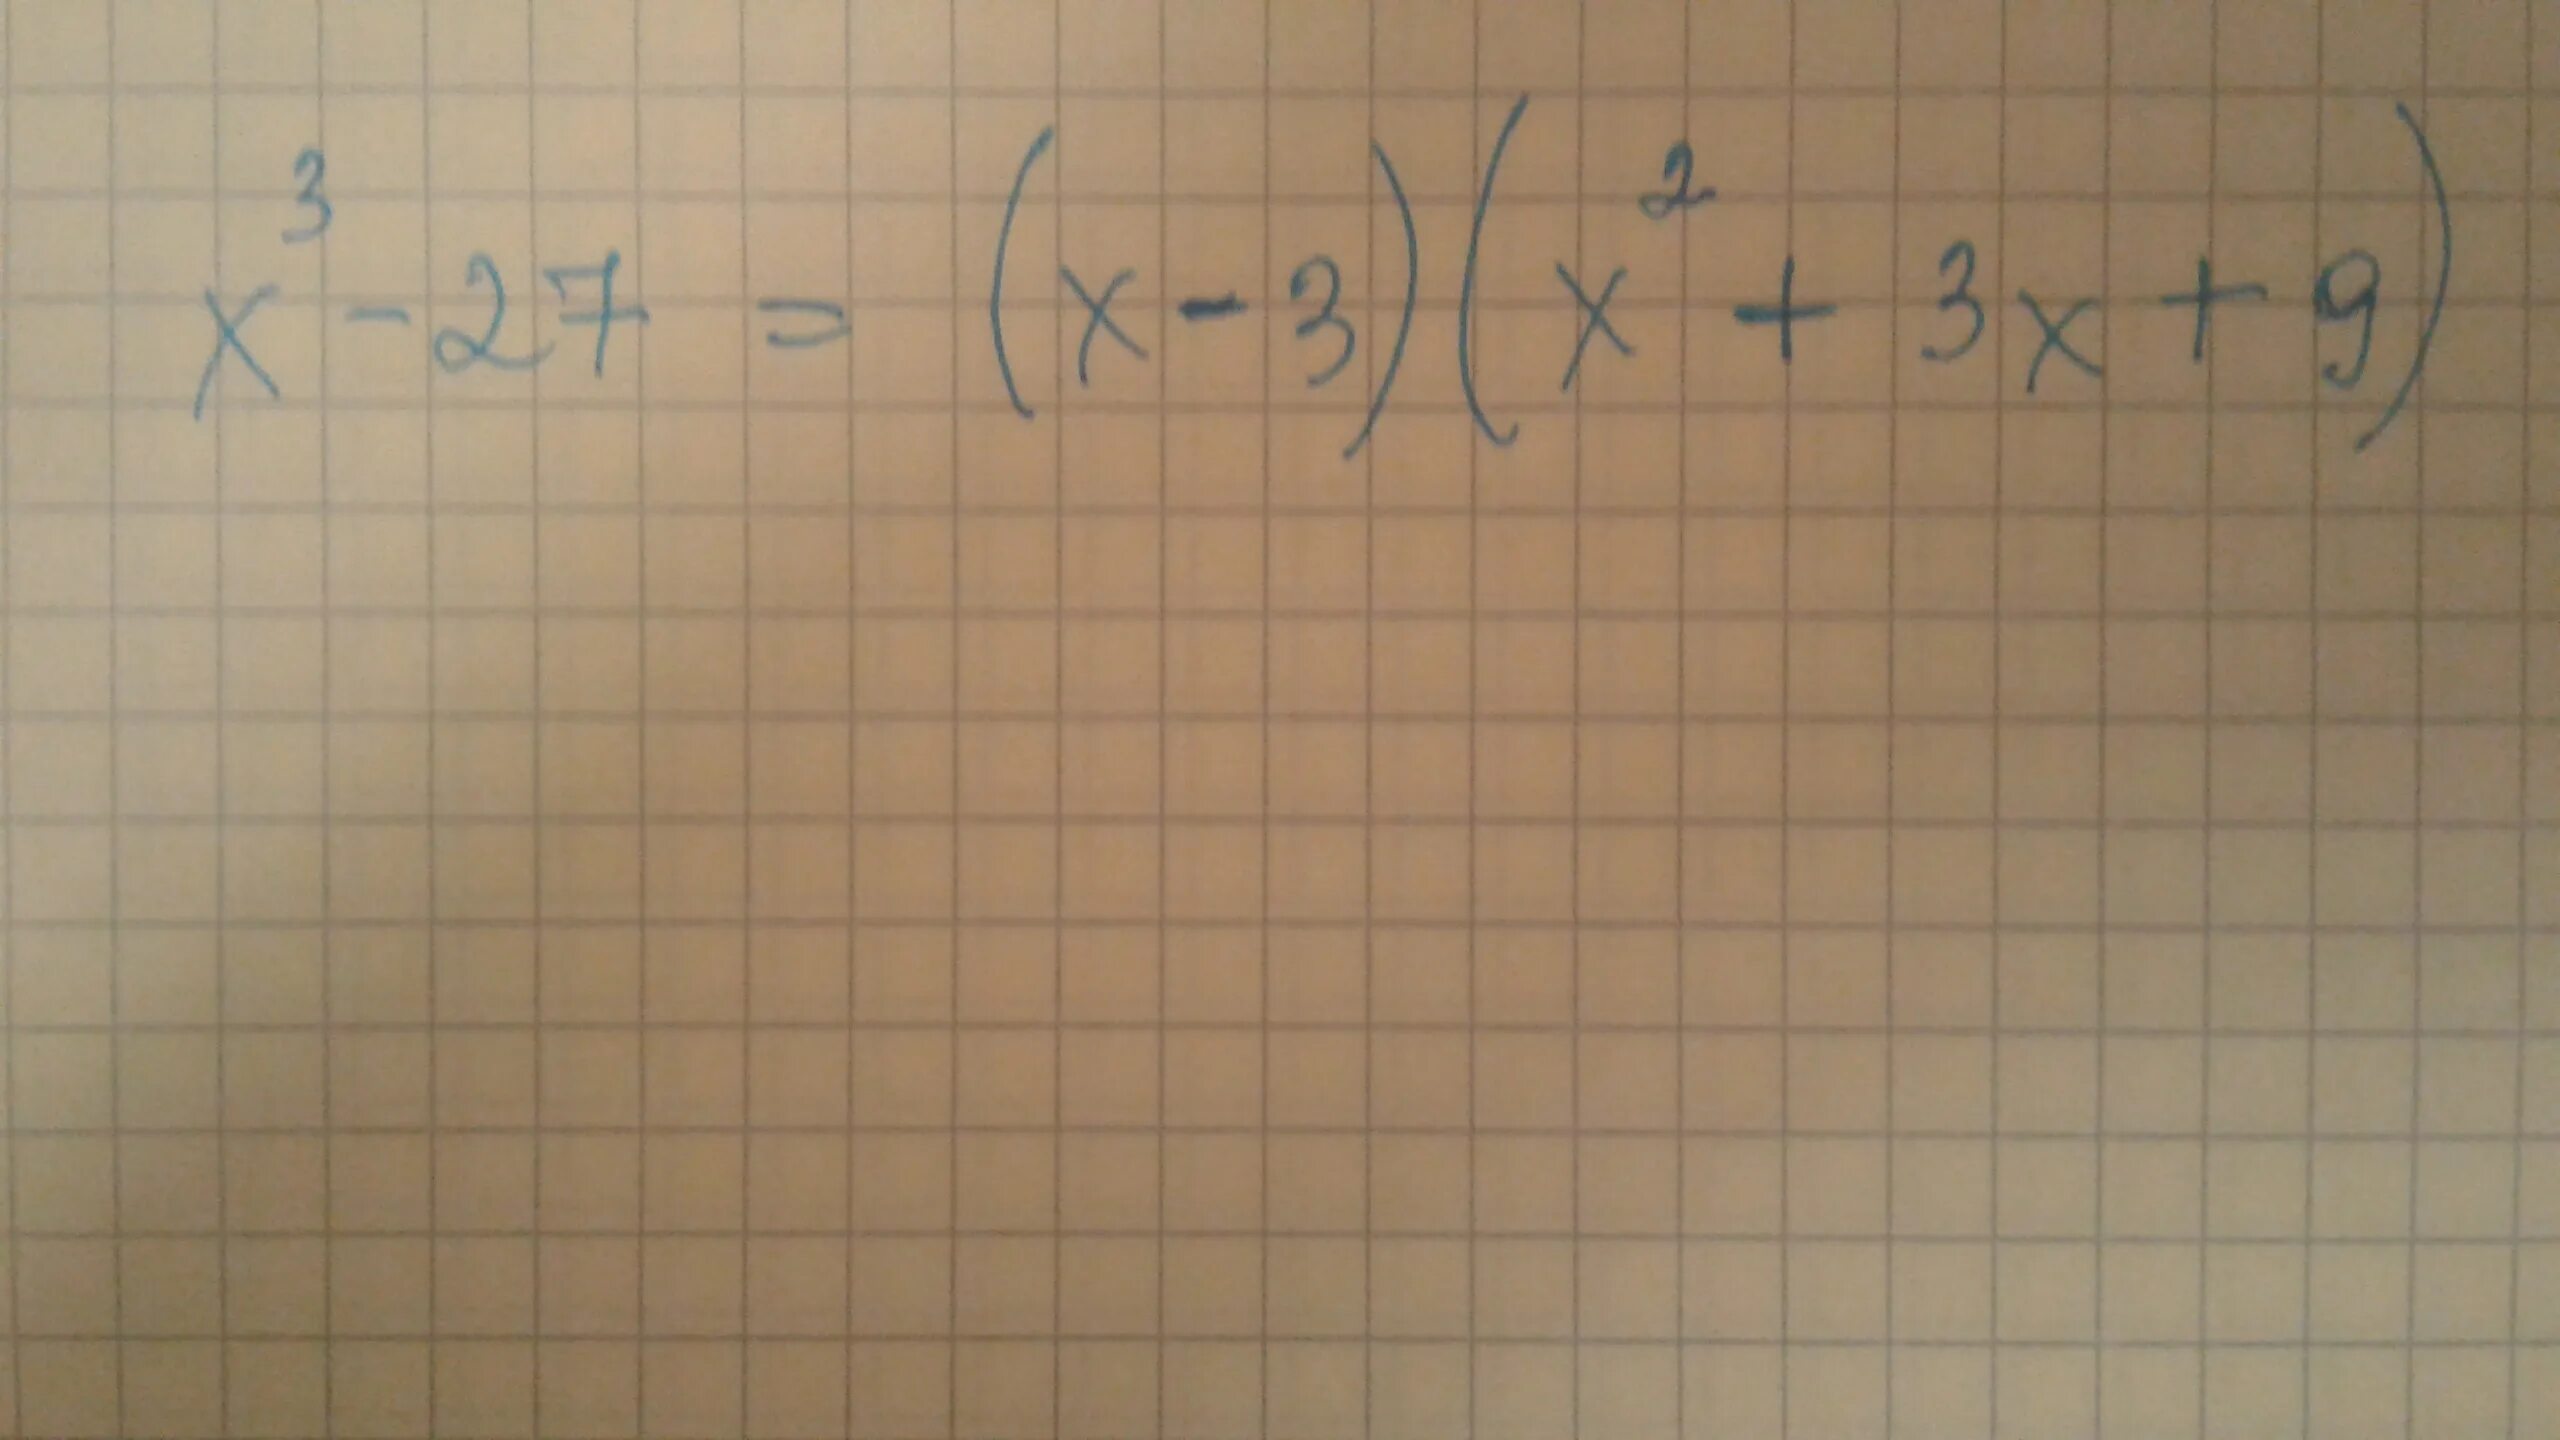 Х 3 х 3 3х 27. X^3-27. 3х=27. 27х3+1 разложить на множители. Разложите на множители х-27х^3.